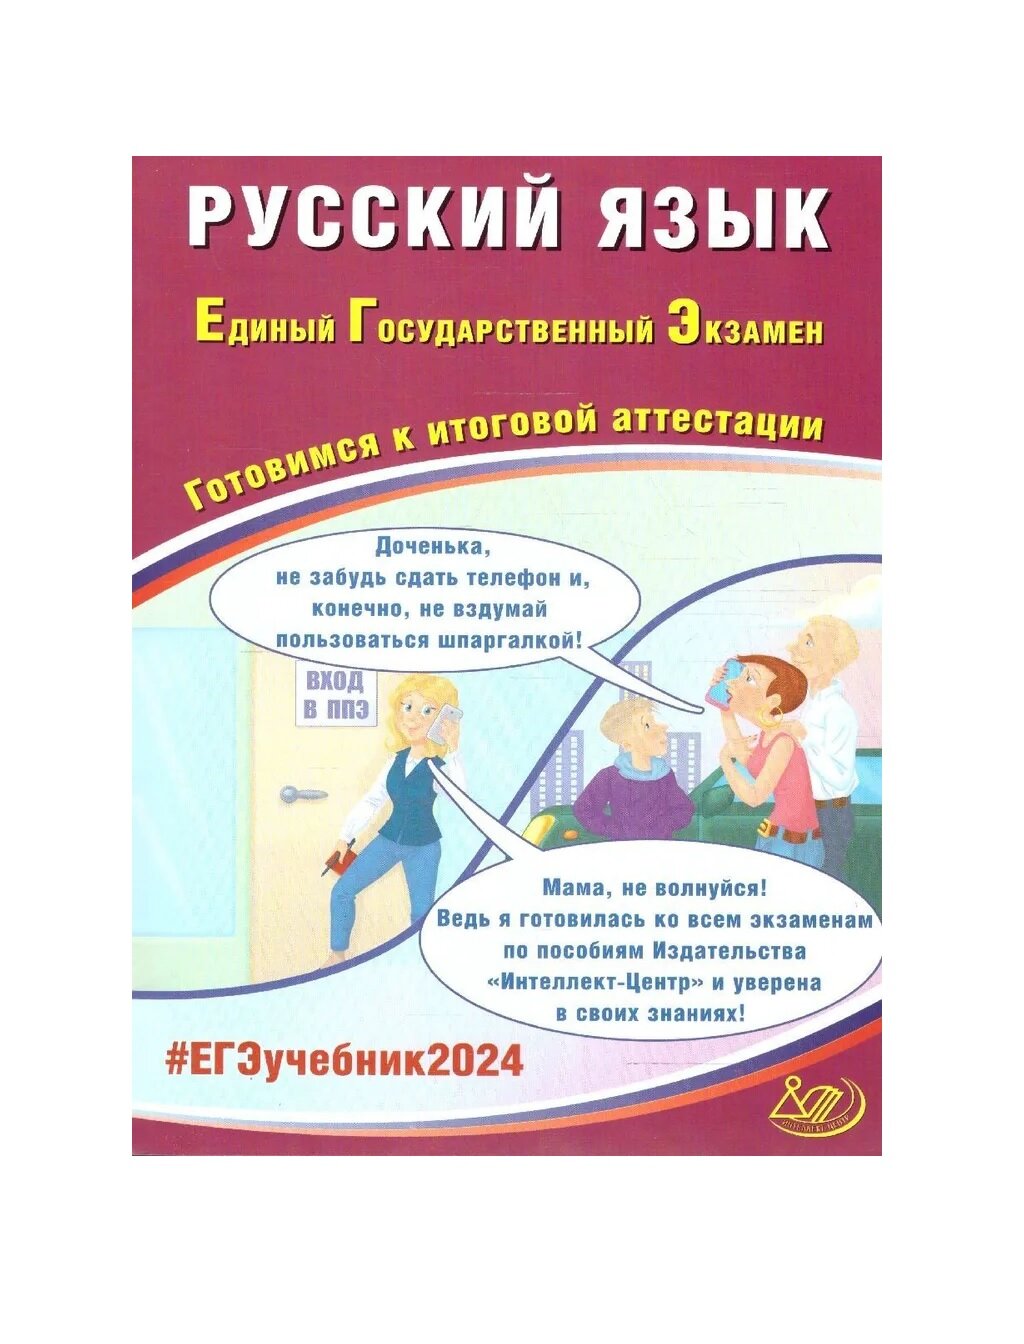 ЕГЭ 2023 Русский язык. Готовимся к итоговой аттестации - фото №1